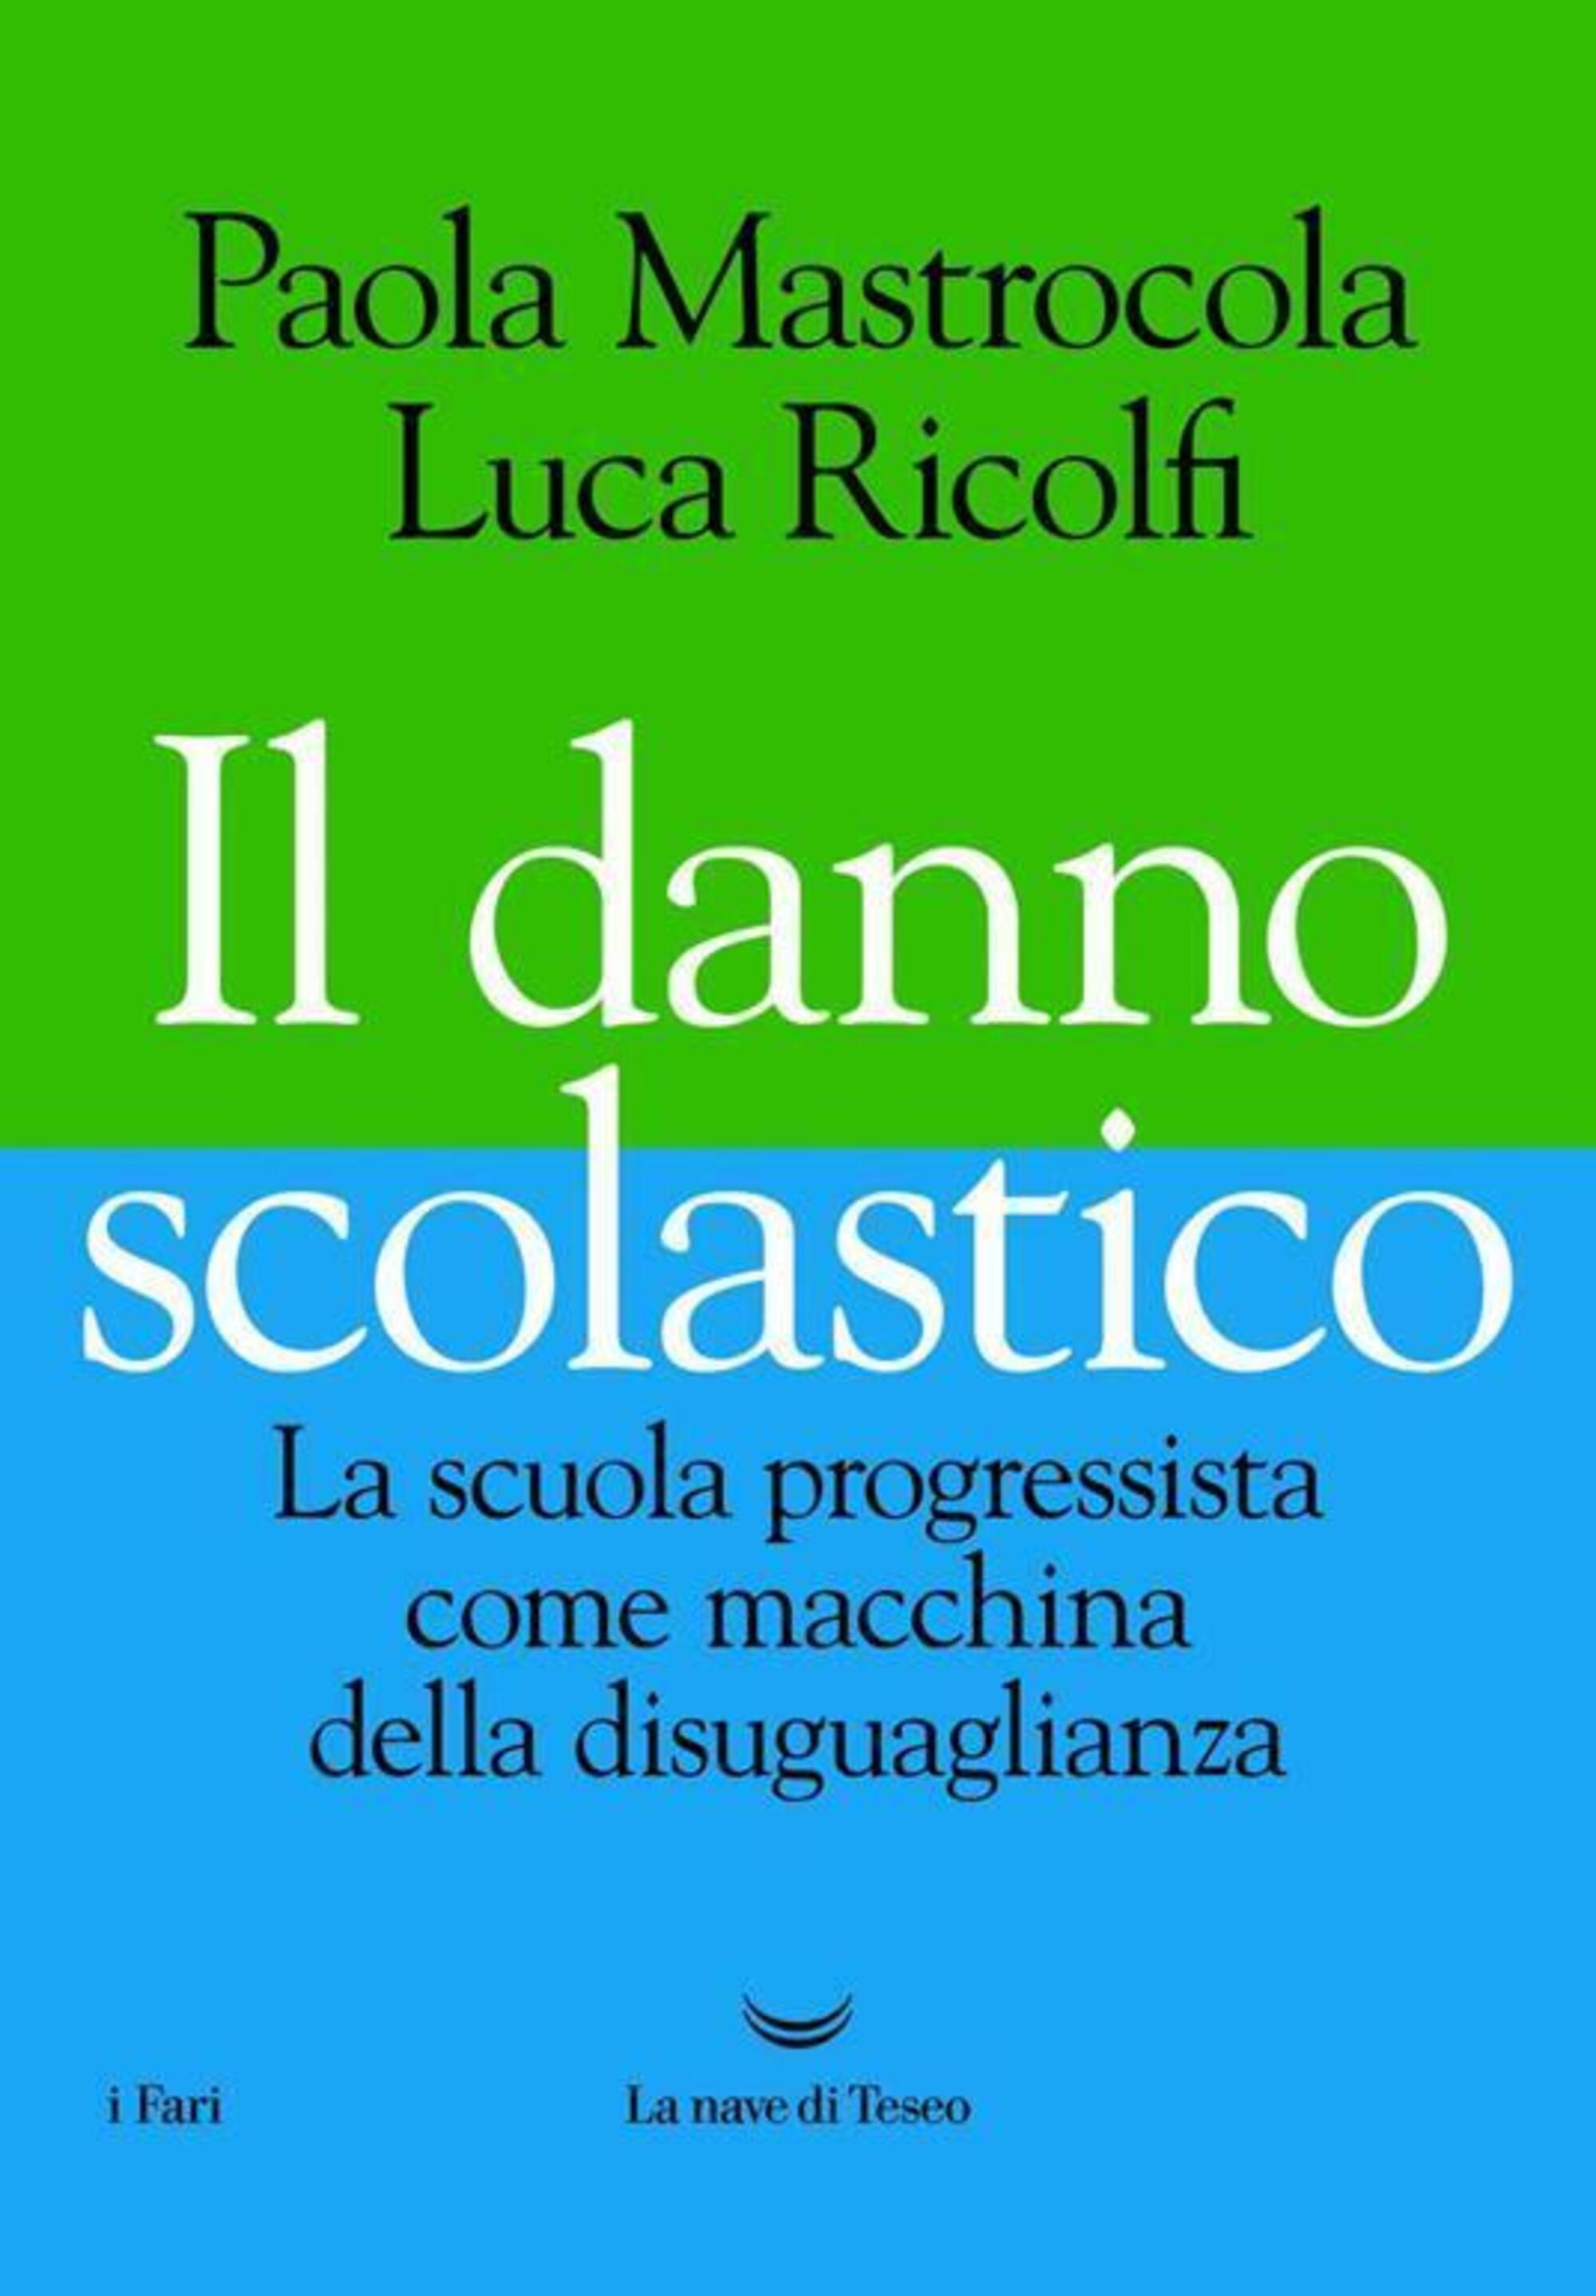 Il danno scolastico, di Paola Mastrocola e Luca Ricolfi